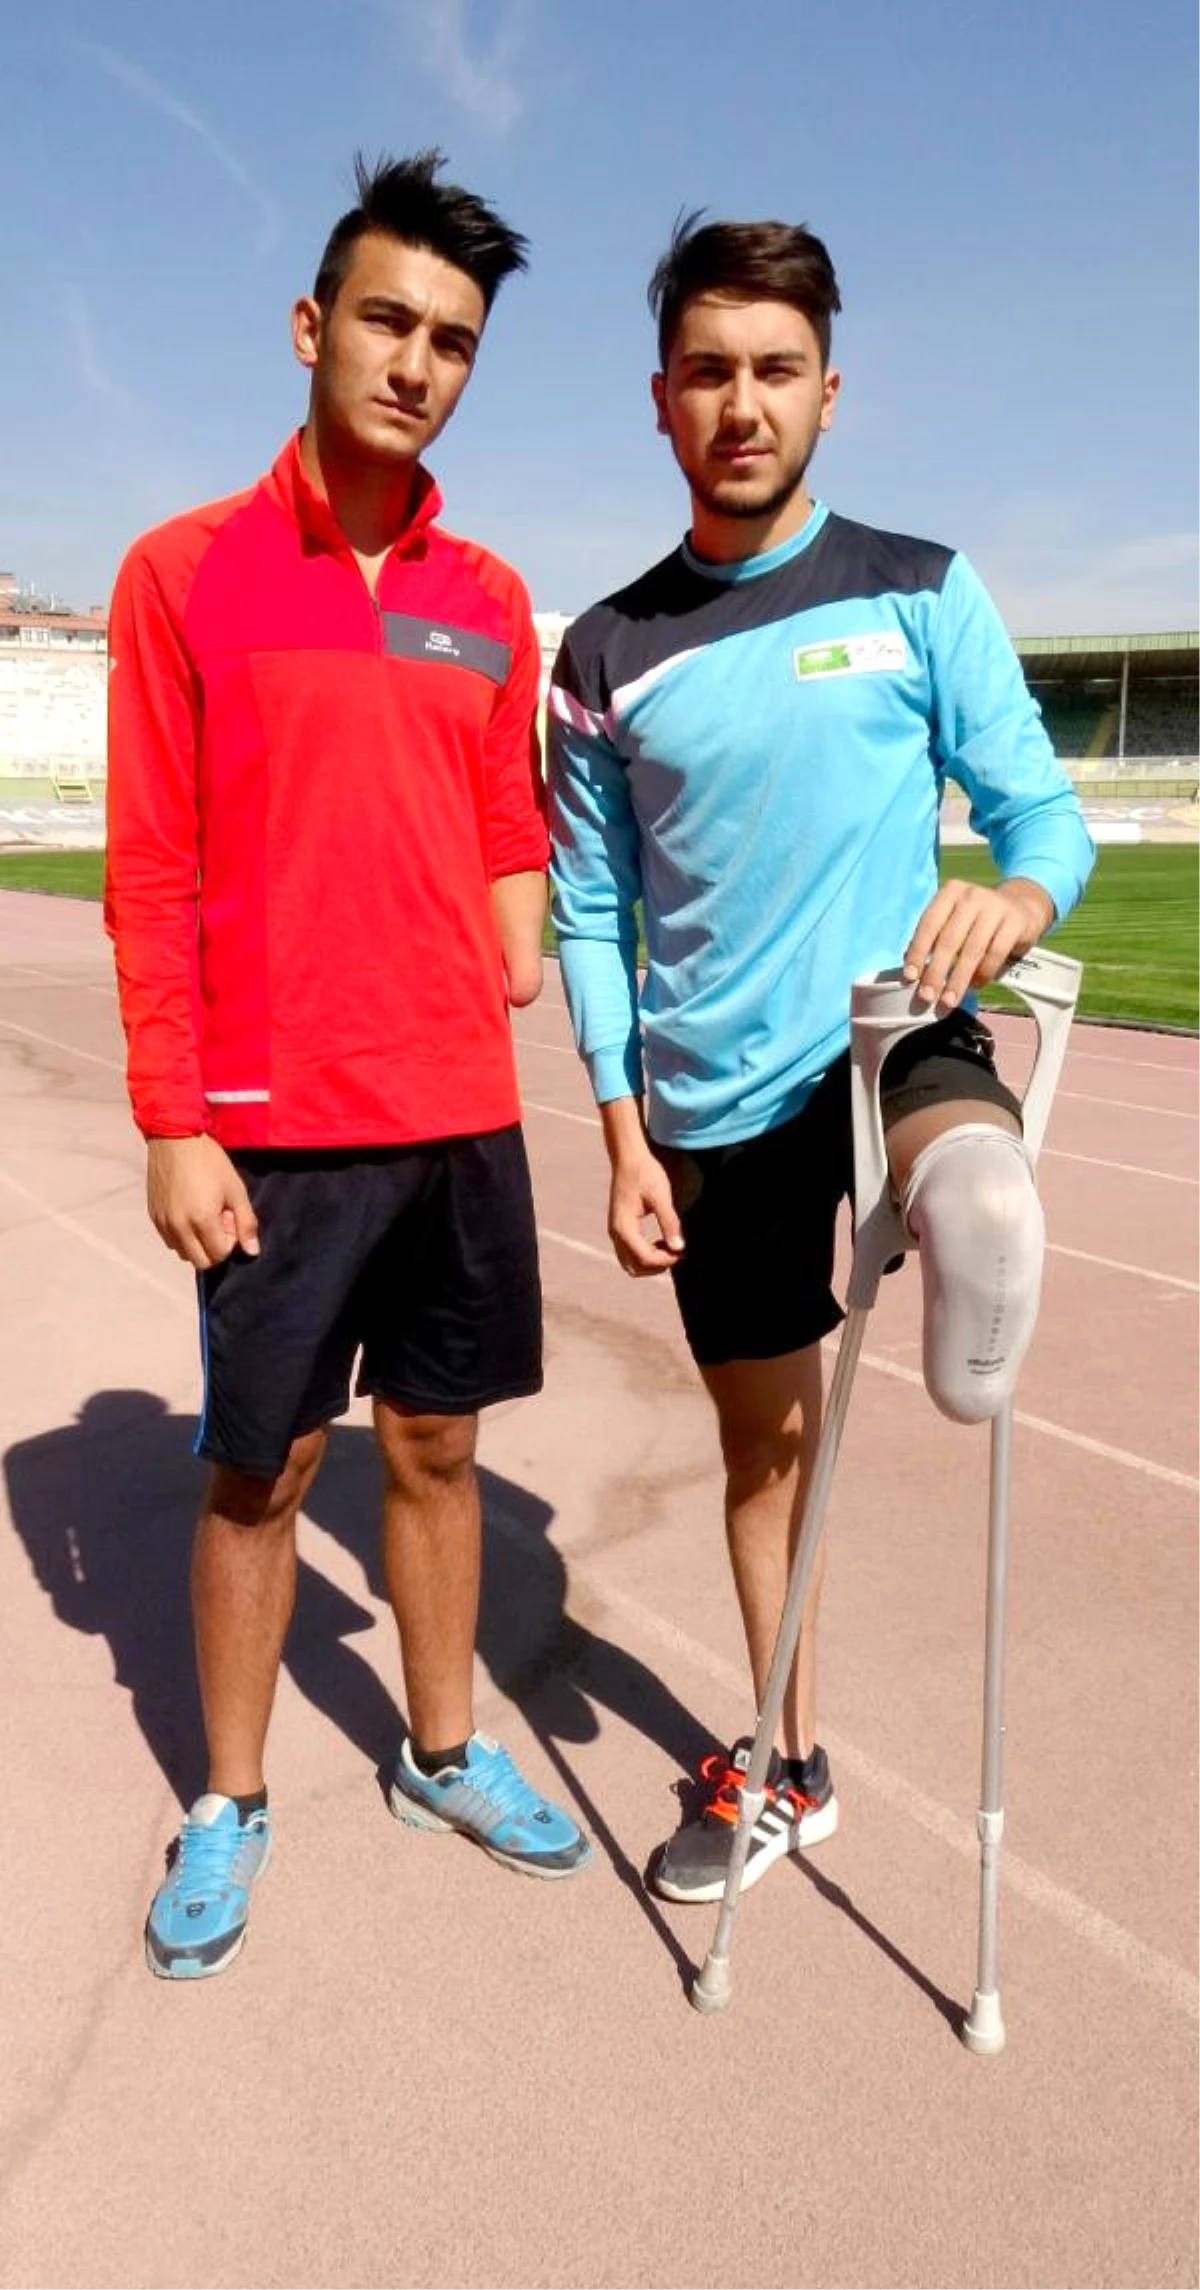 Spor Yapabilmek İçin Esnek Protez Bacak ve Kola İhtiyaçları Var